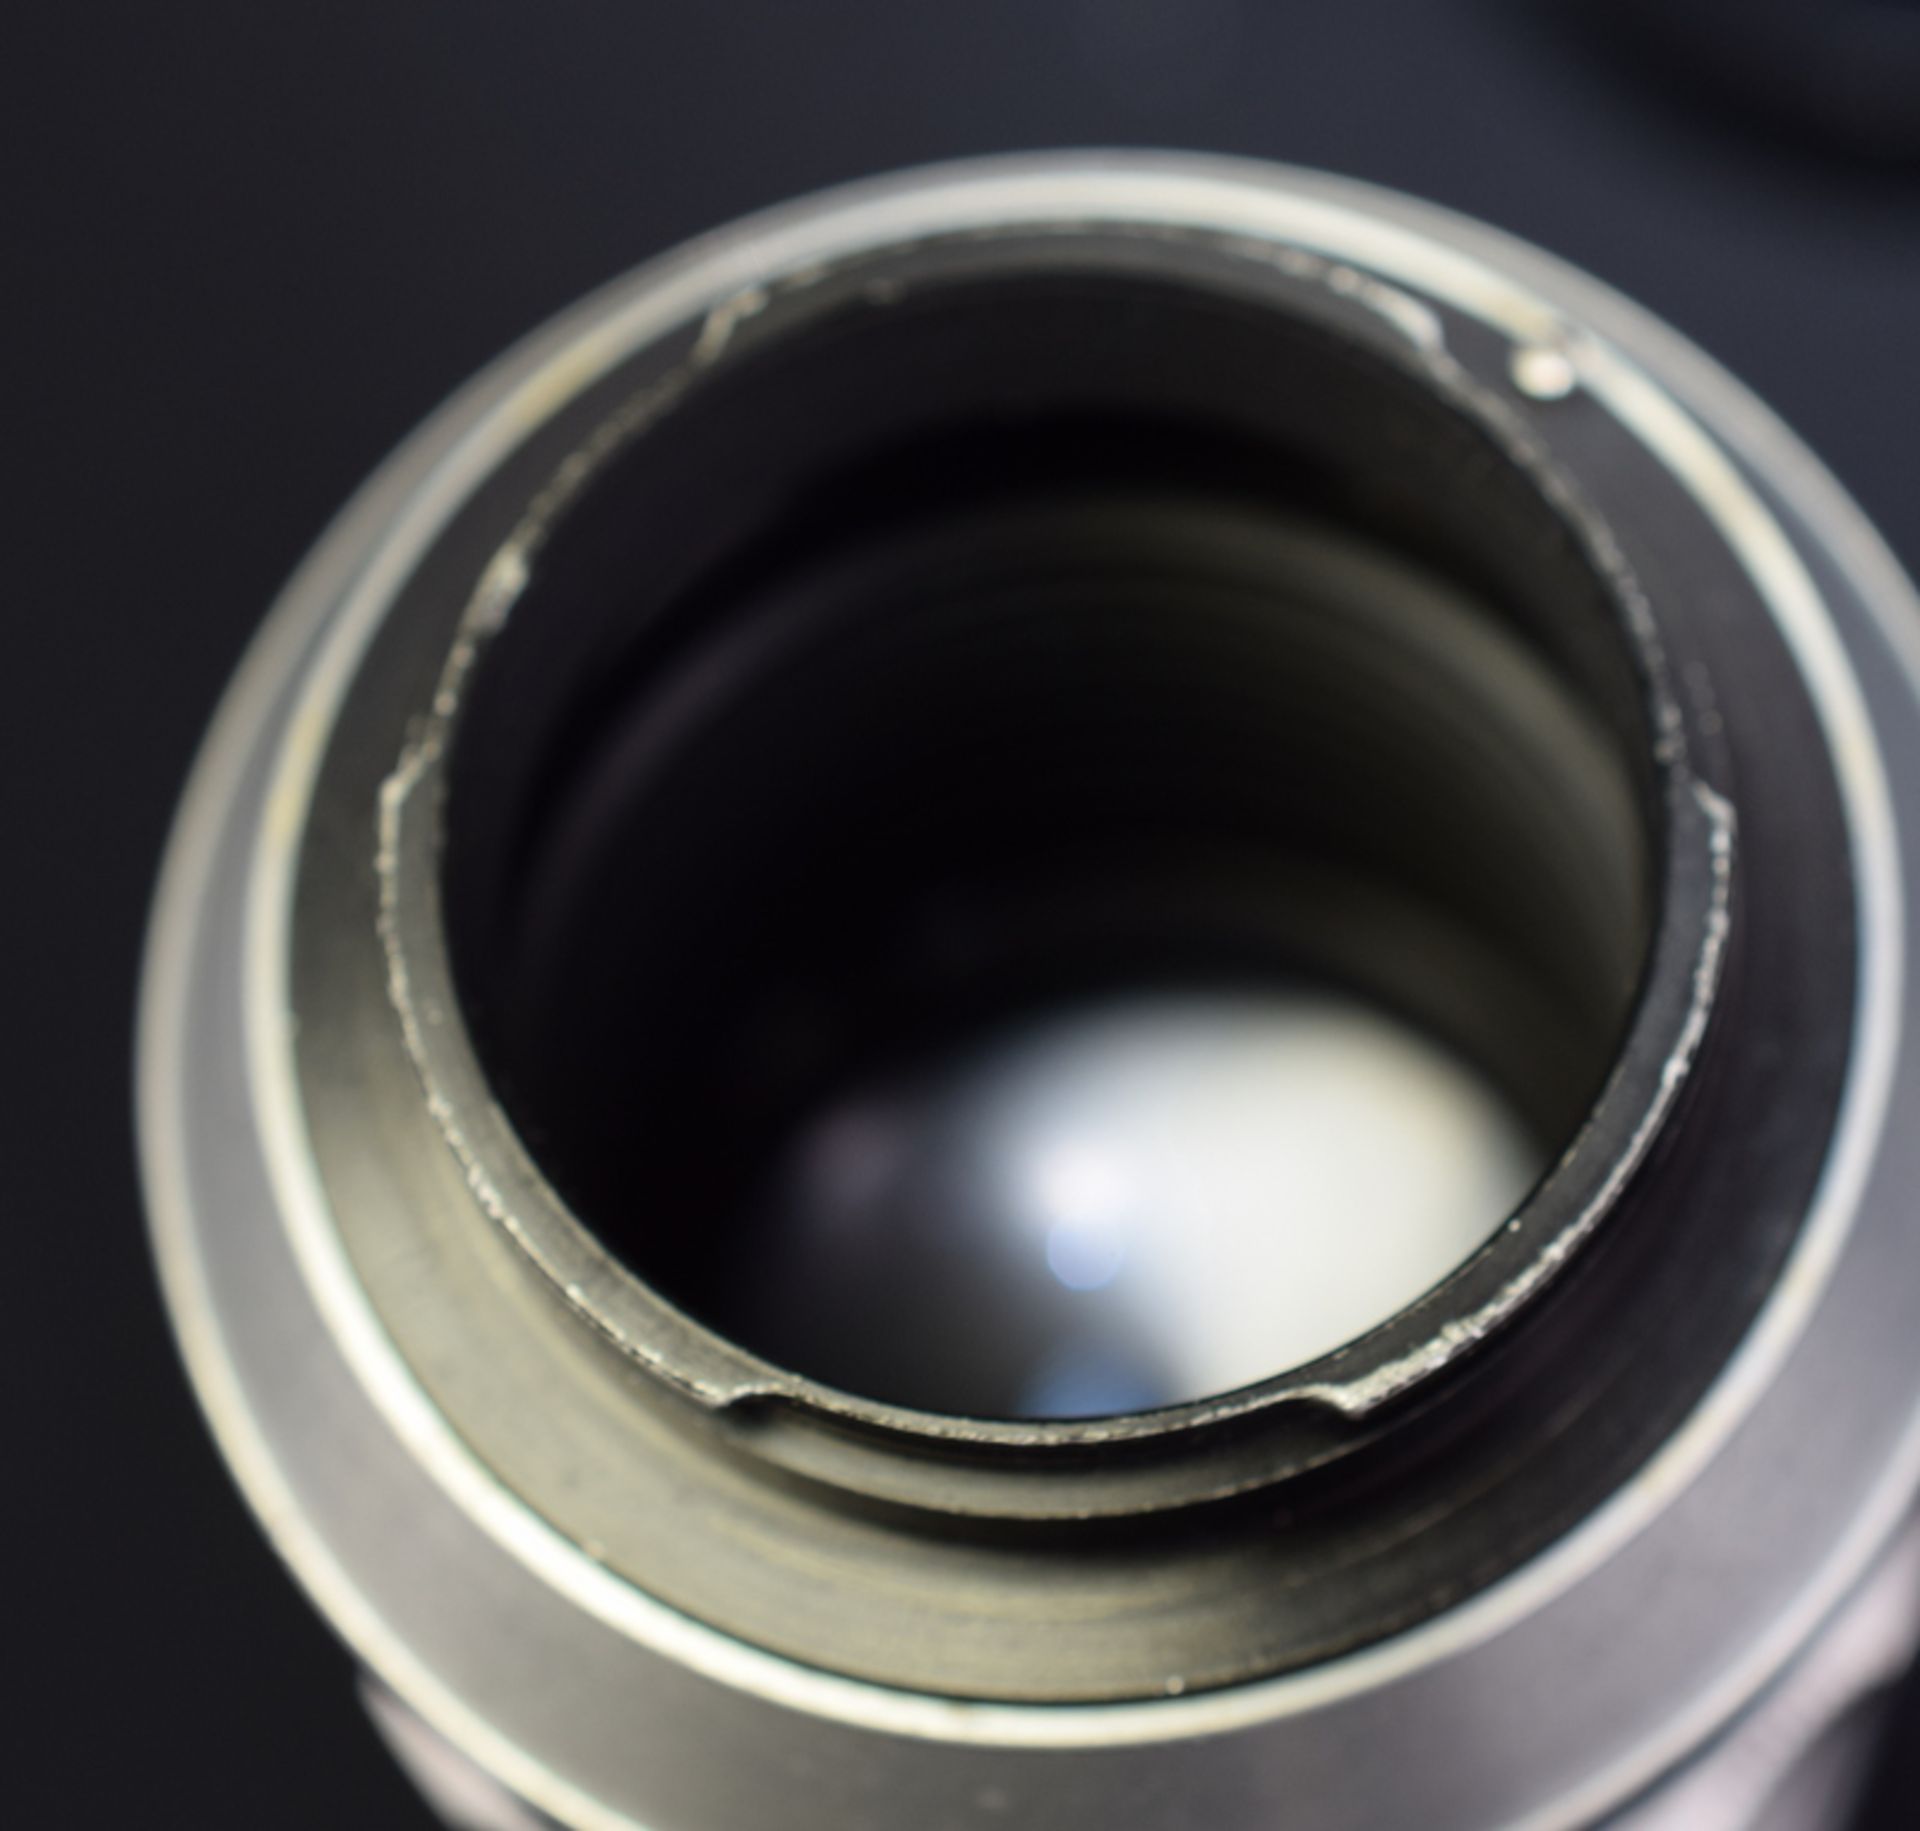 Meyer Optik Trioplan 2.8/100mm Exakta Mount Lens - Image 8 of 8